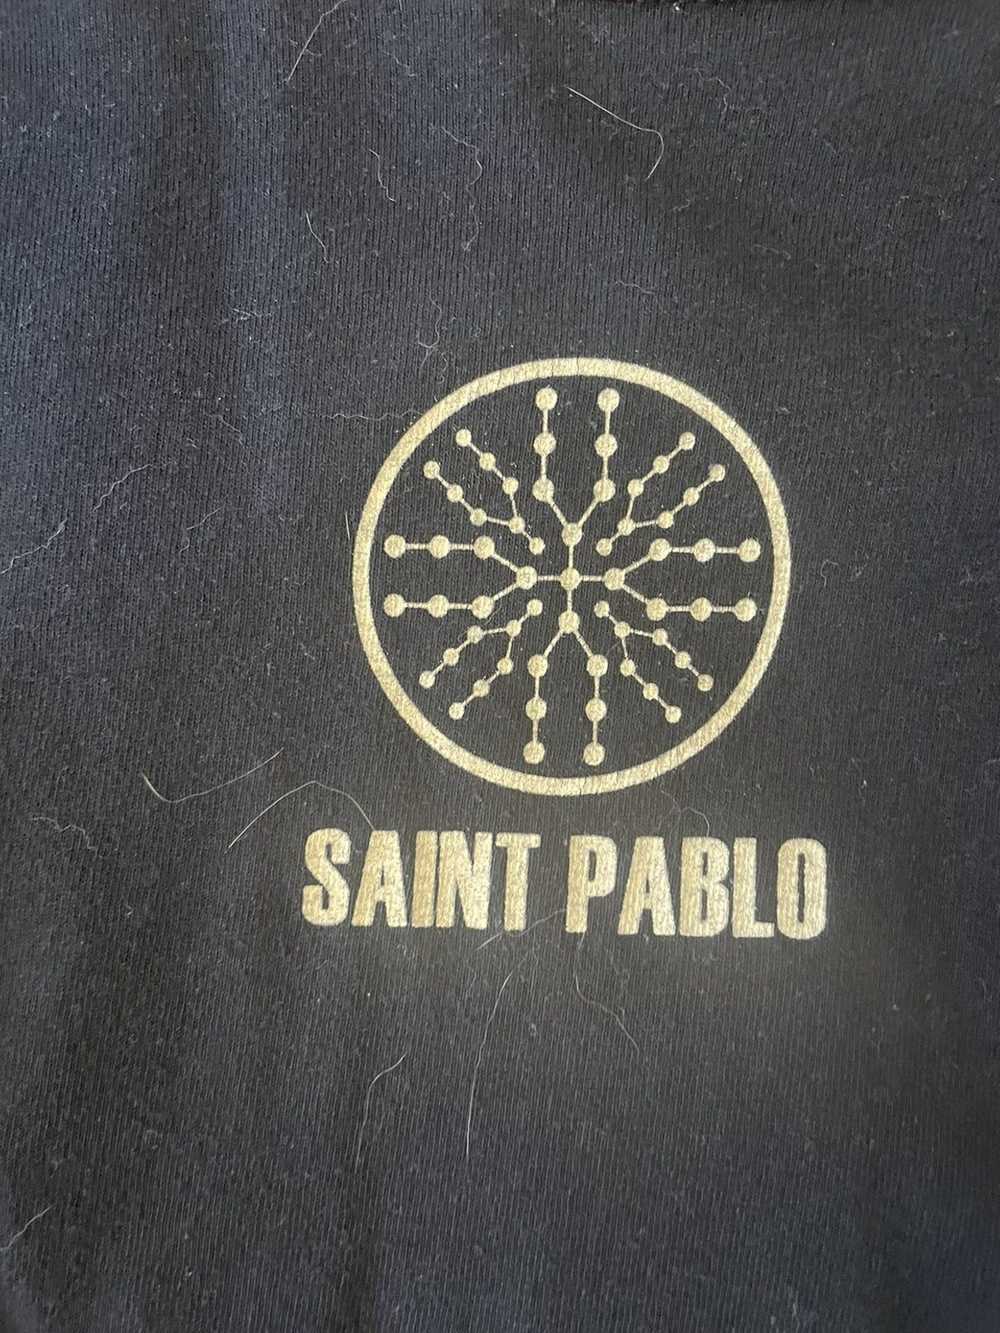 Kanye West Saint Pablo Tour Merch - image 3